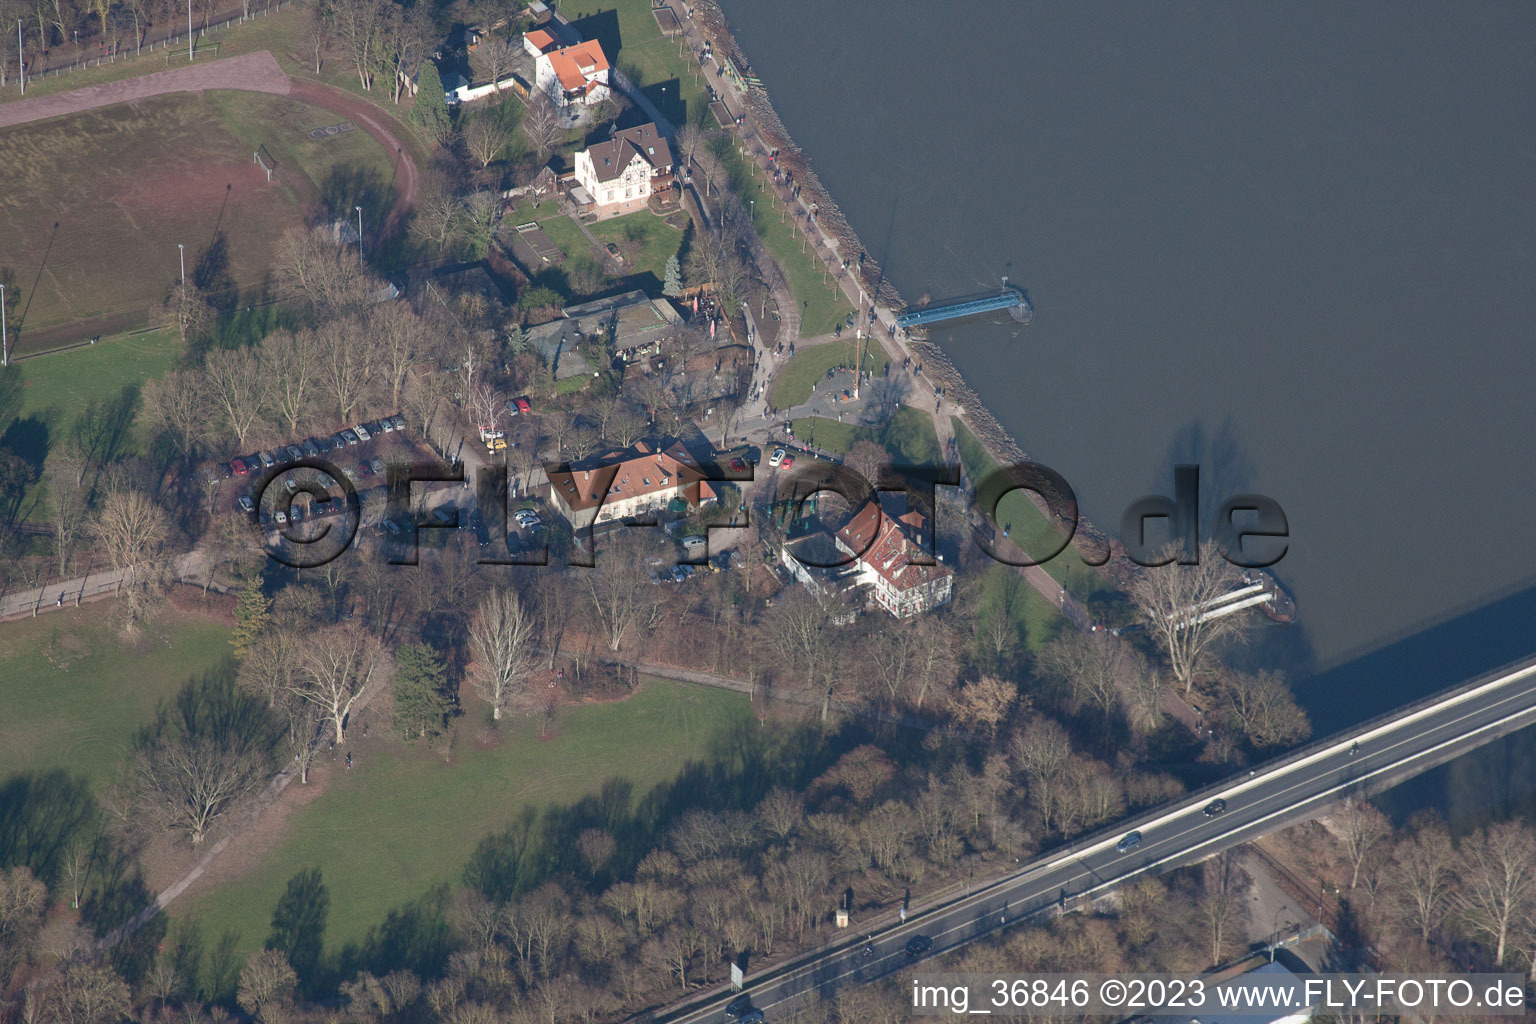 Speyer dans le département Rhénanie-Palatinat, Allemagne hors des airs